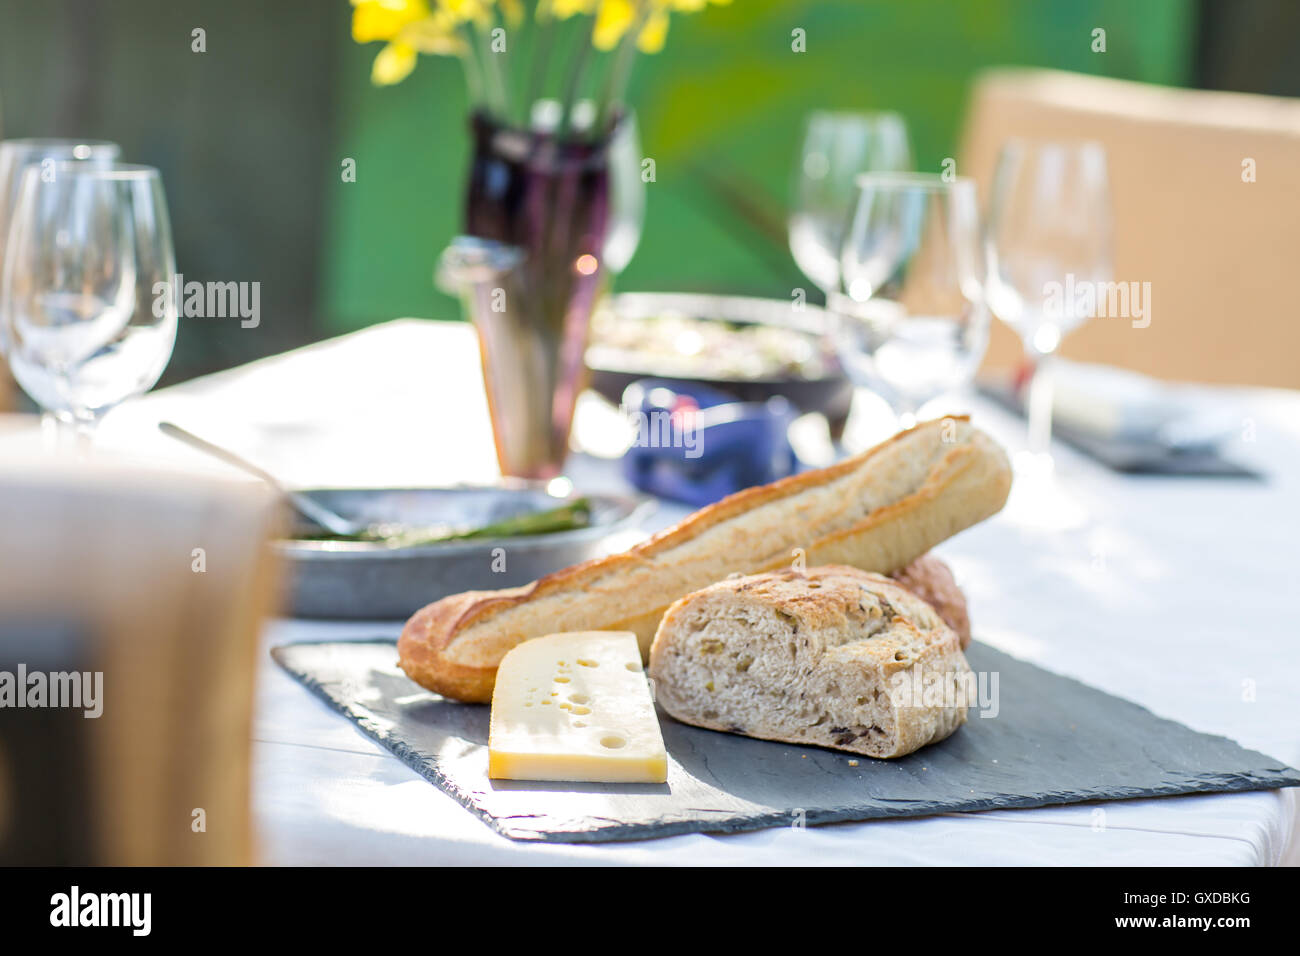 Partie table de jardin avec plateau de fromages et du pain Banque D'Images